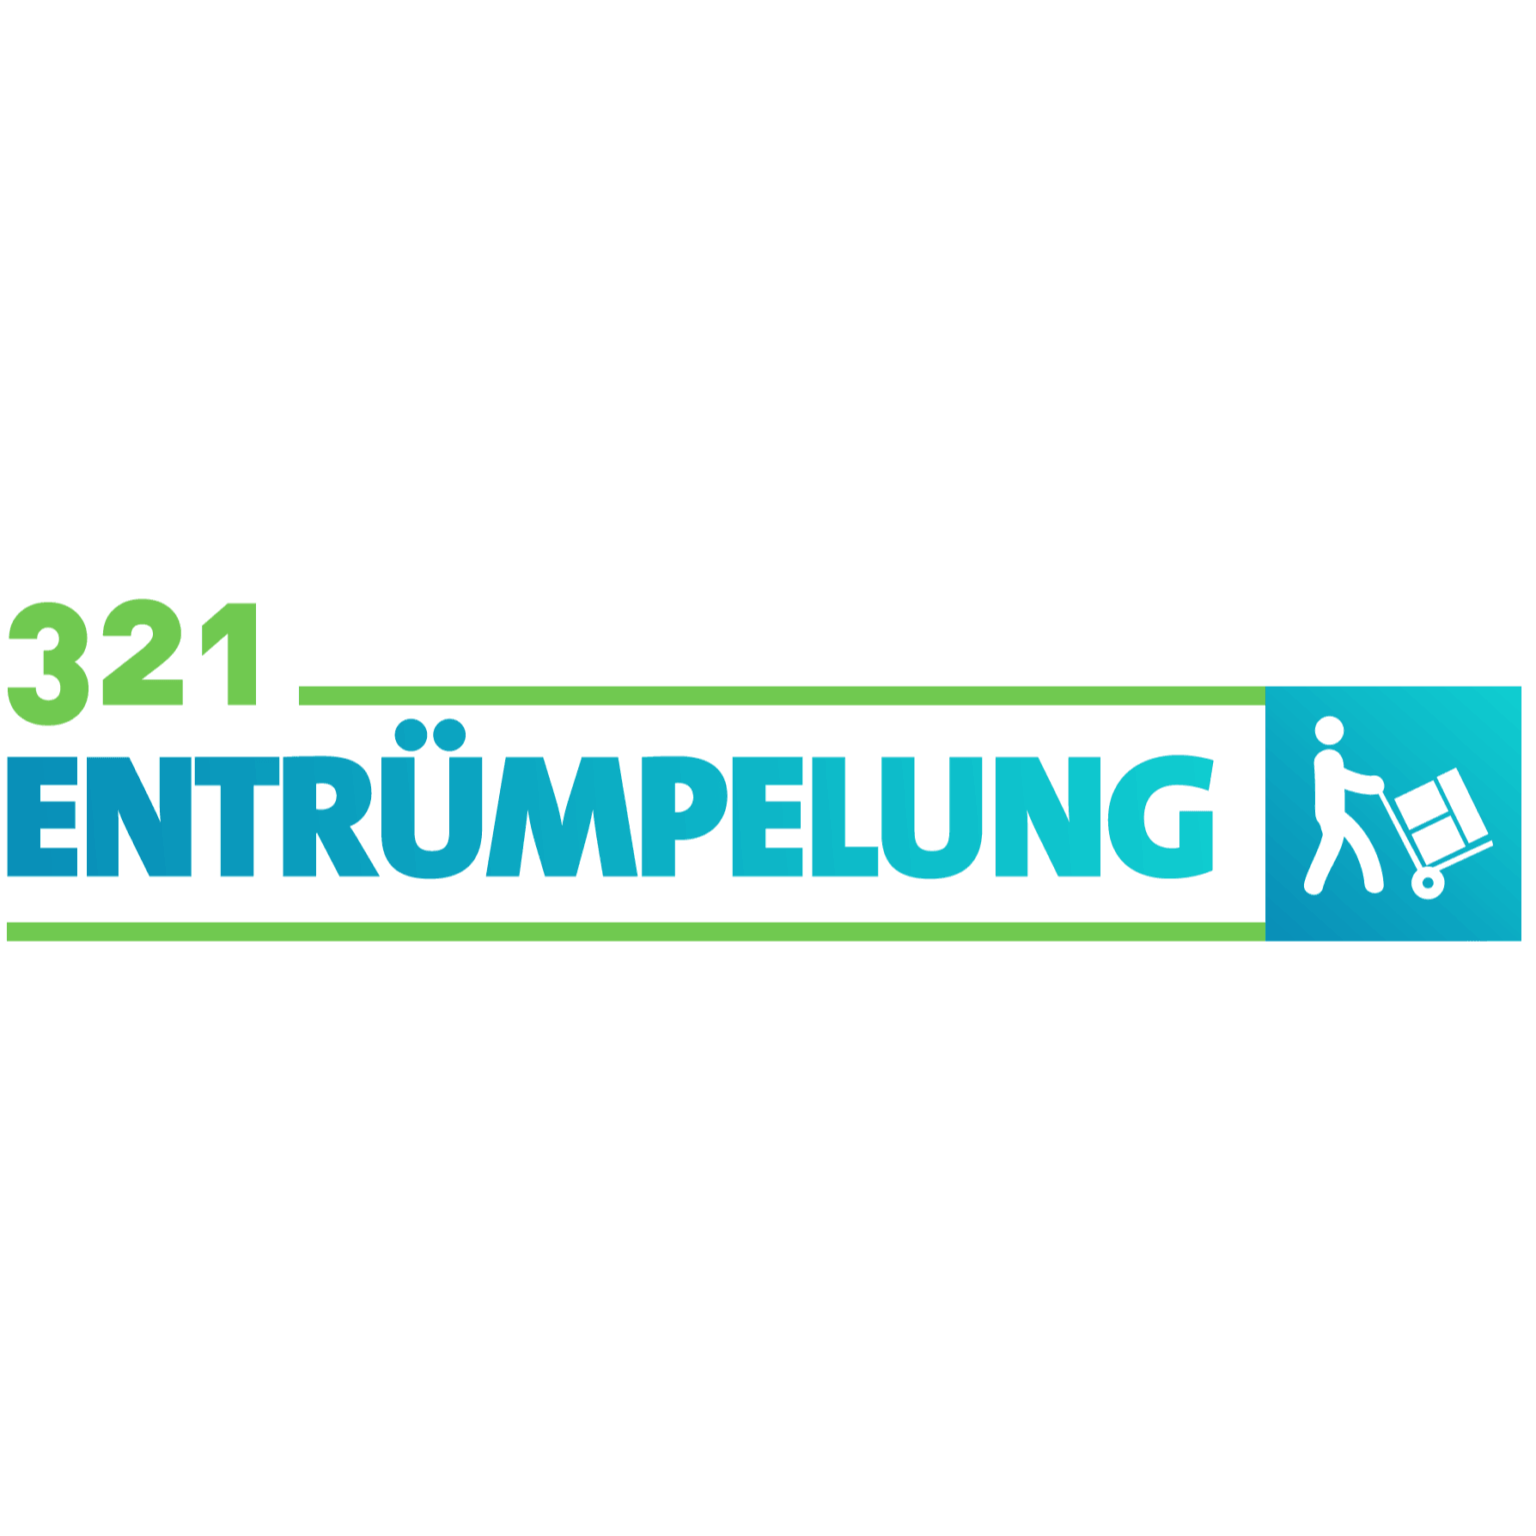 321 Entrümpelung Duisburg & Haushaltsauflösung - Waste Management Service - Duisburg - 0172 7788096 Germany | ShowMeLocal.com